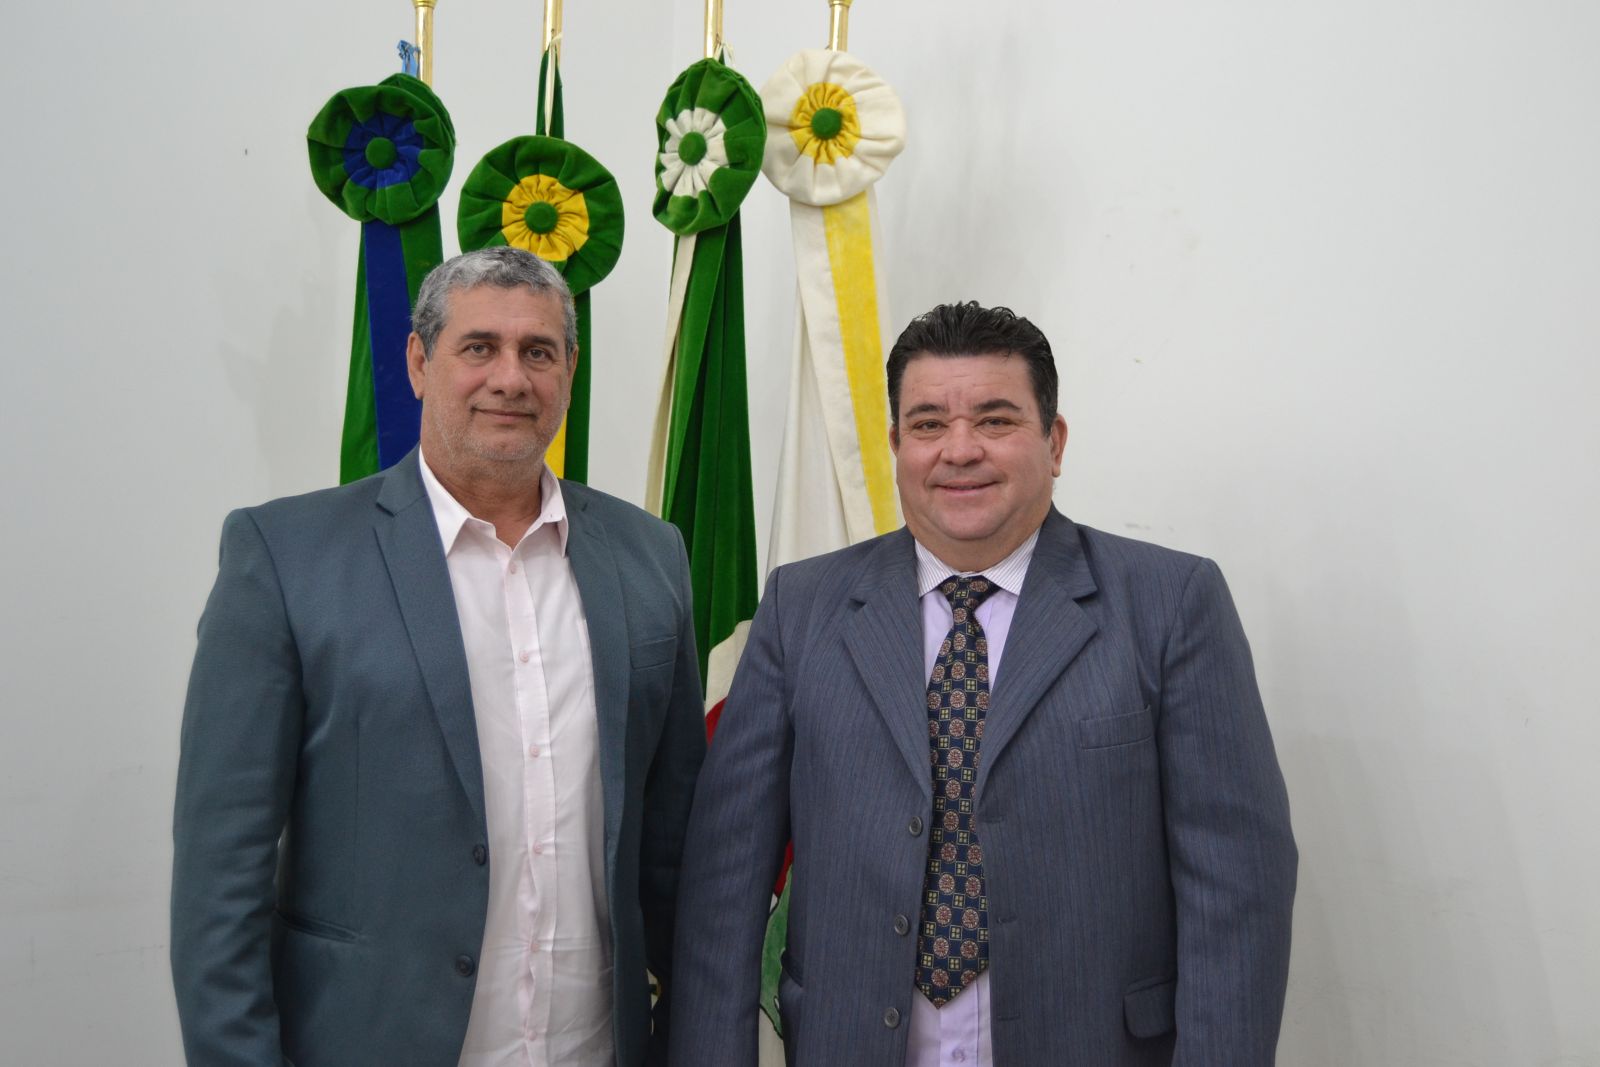 Josias de Carvalho e José Roberto Pinheiro